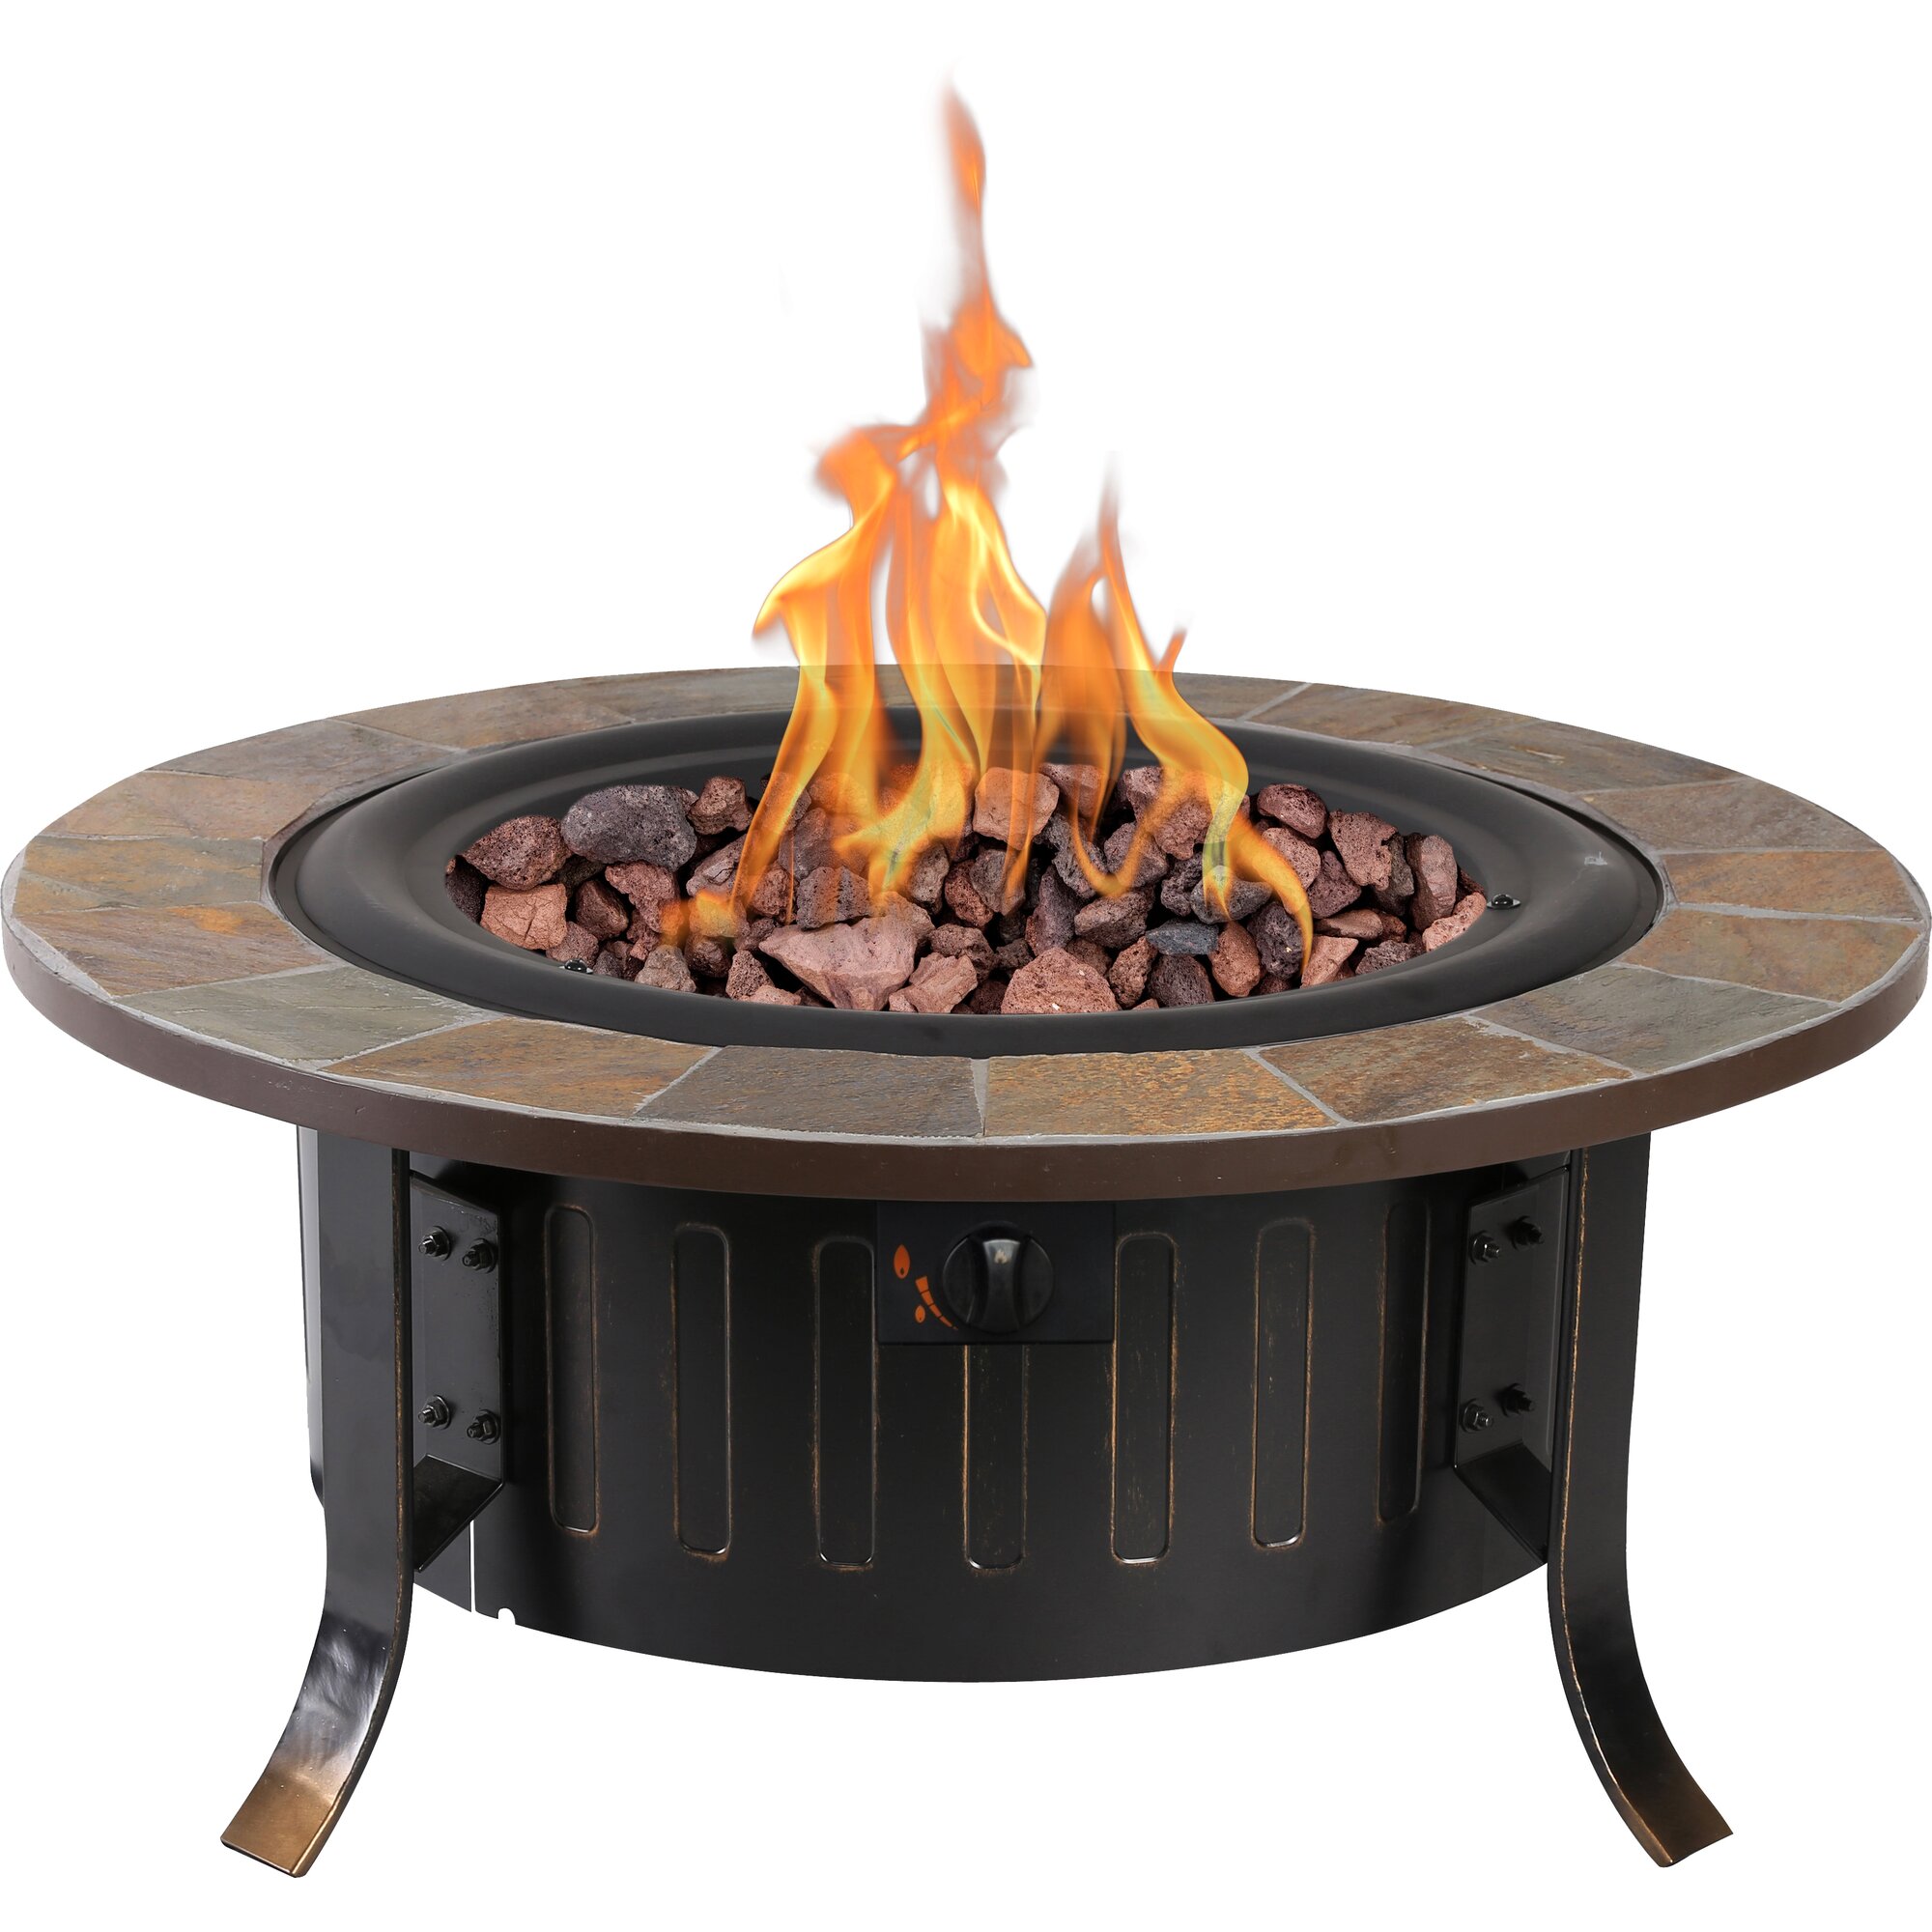 Bond Bolen Steel Outdoor Gas Table Top Fireplace & Reviews ...